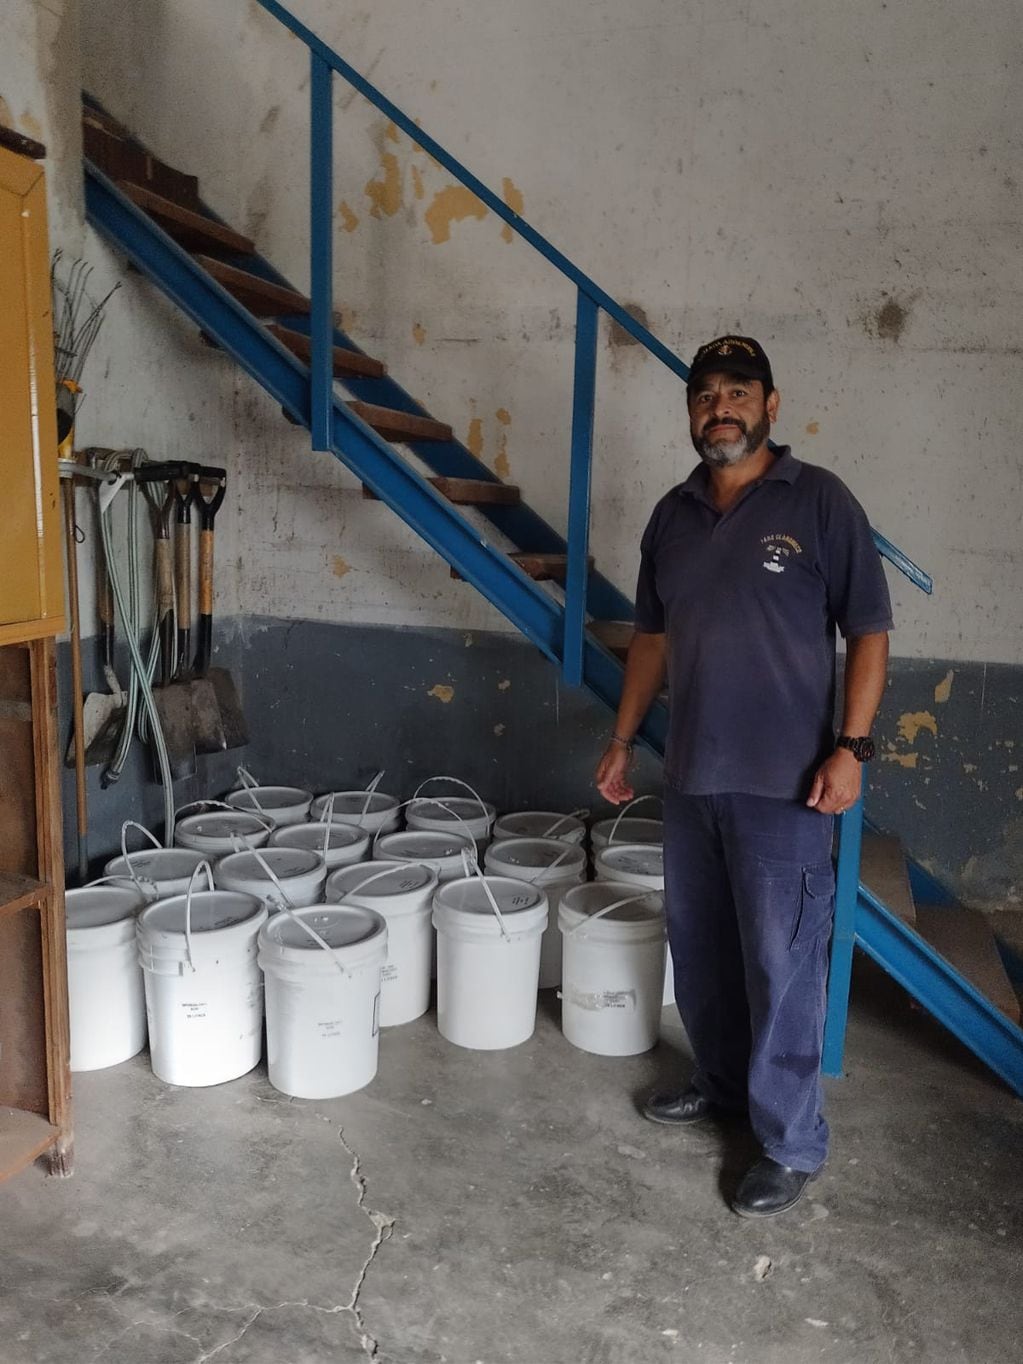 Donaron más de 300 litros de pintura para pintar el faro de Claromecó